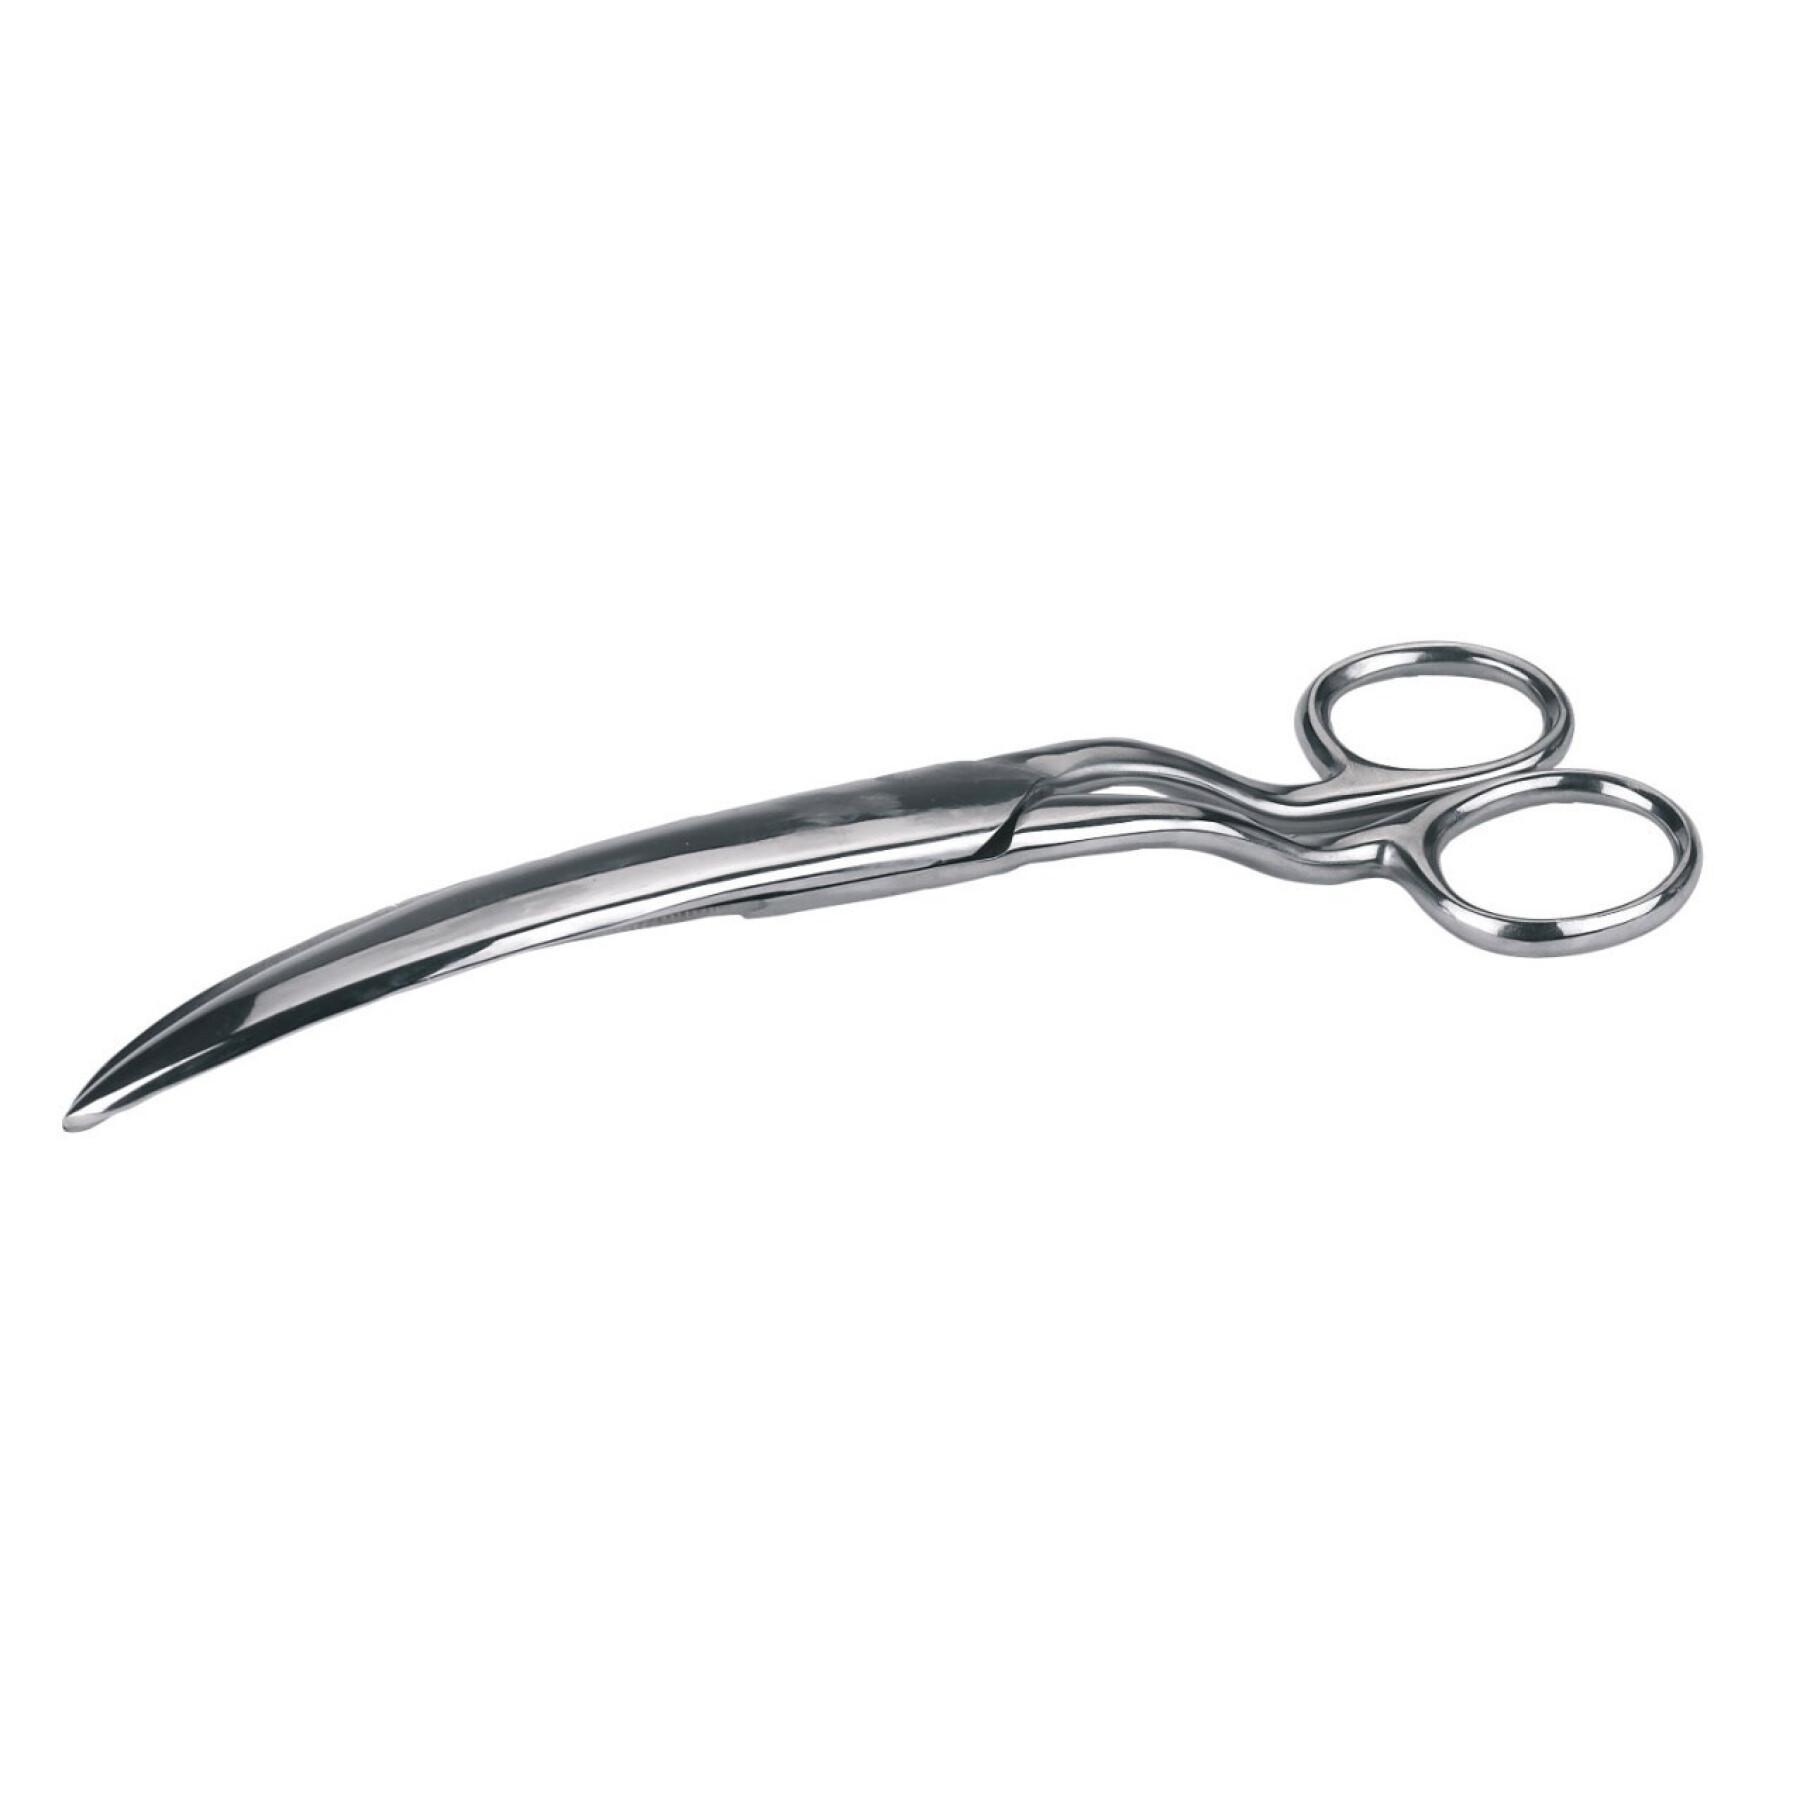 Stainless steel hair scissors Kerbl